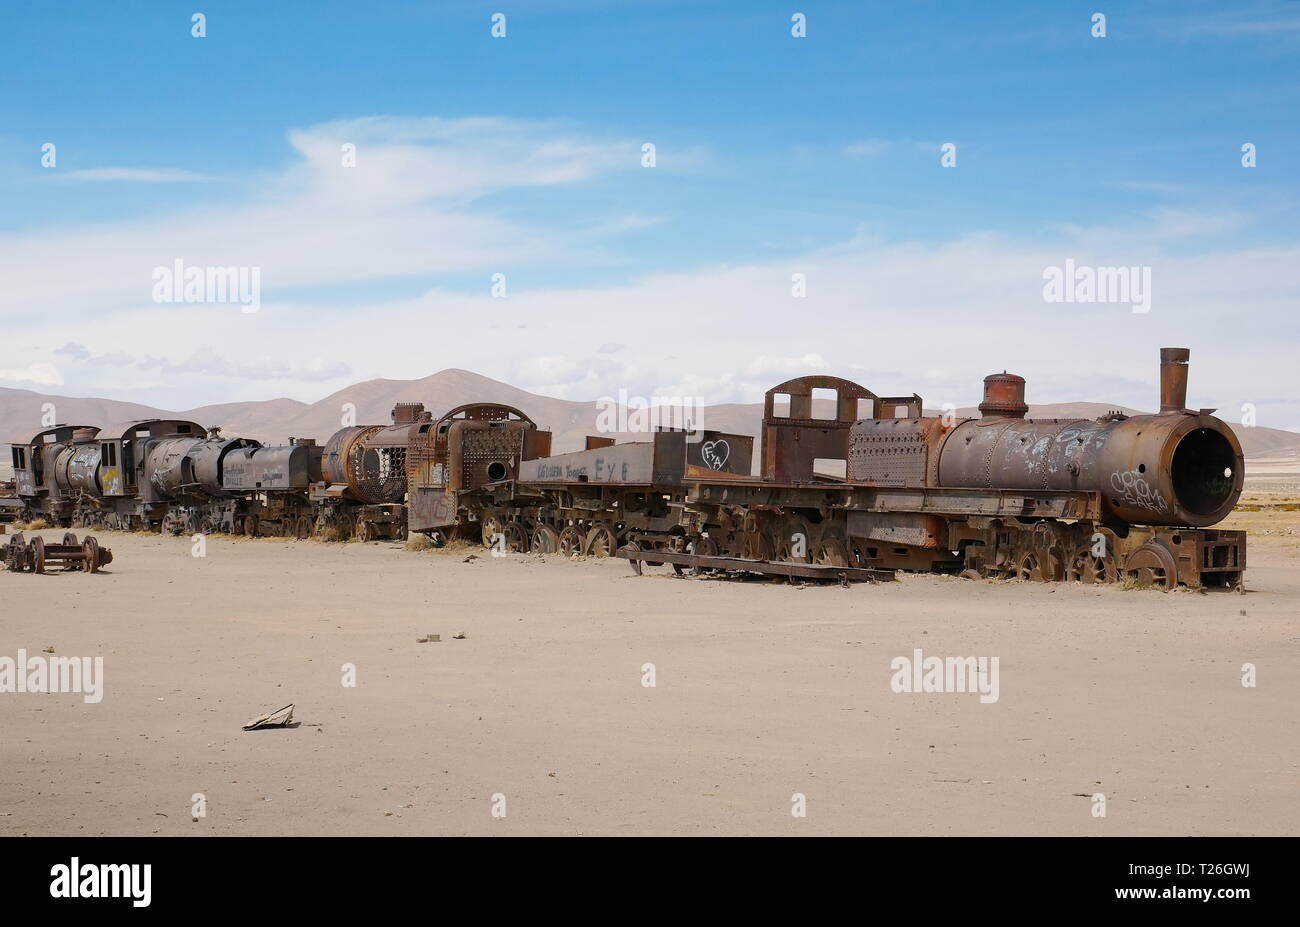 Cimetière de train près de Uyuni, Bolovia. De l'altiplano andin Bolivie, Amérique du Sud Banque D'Images